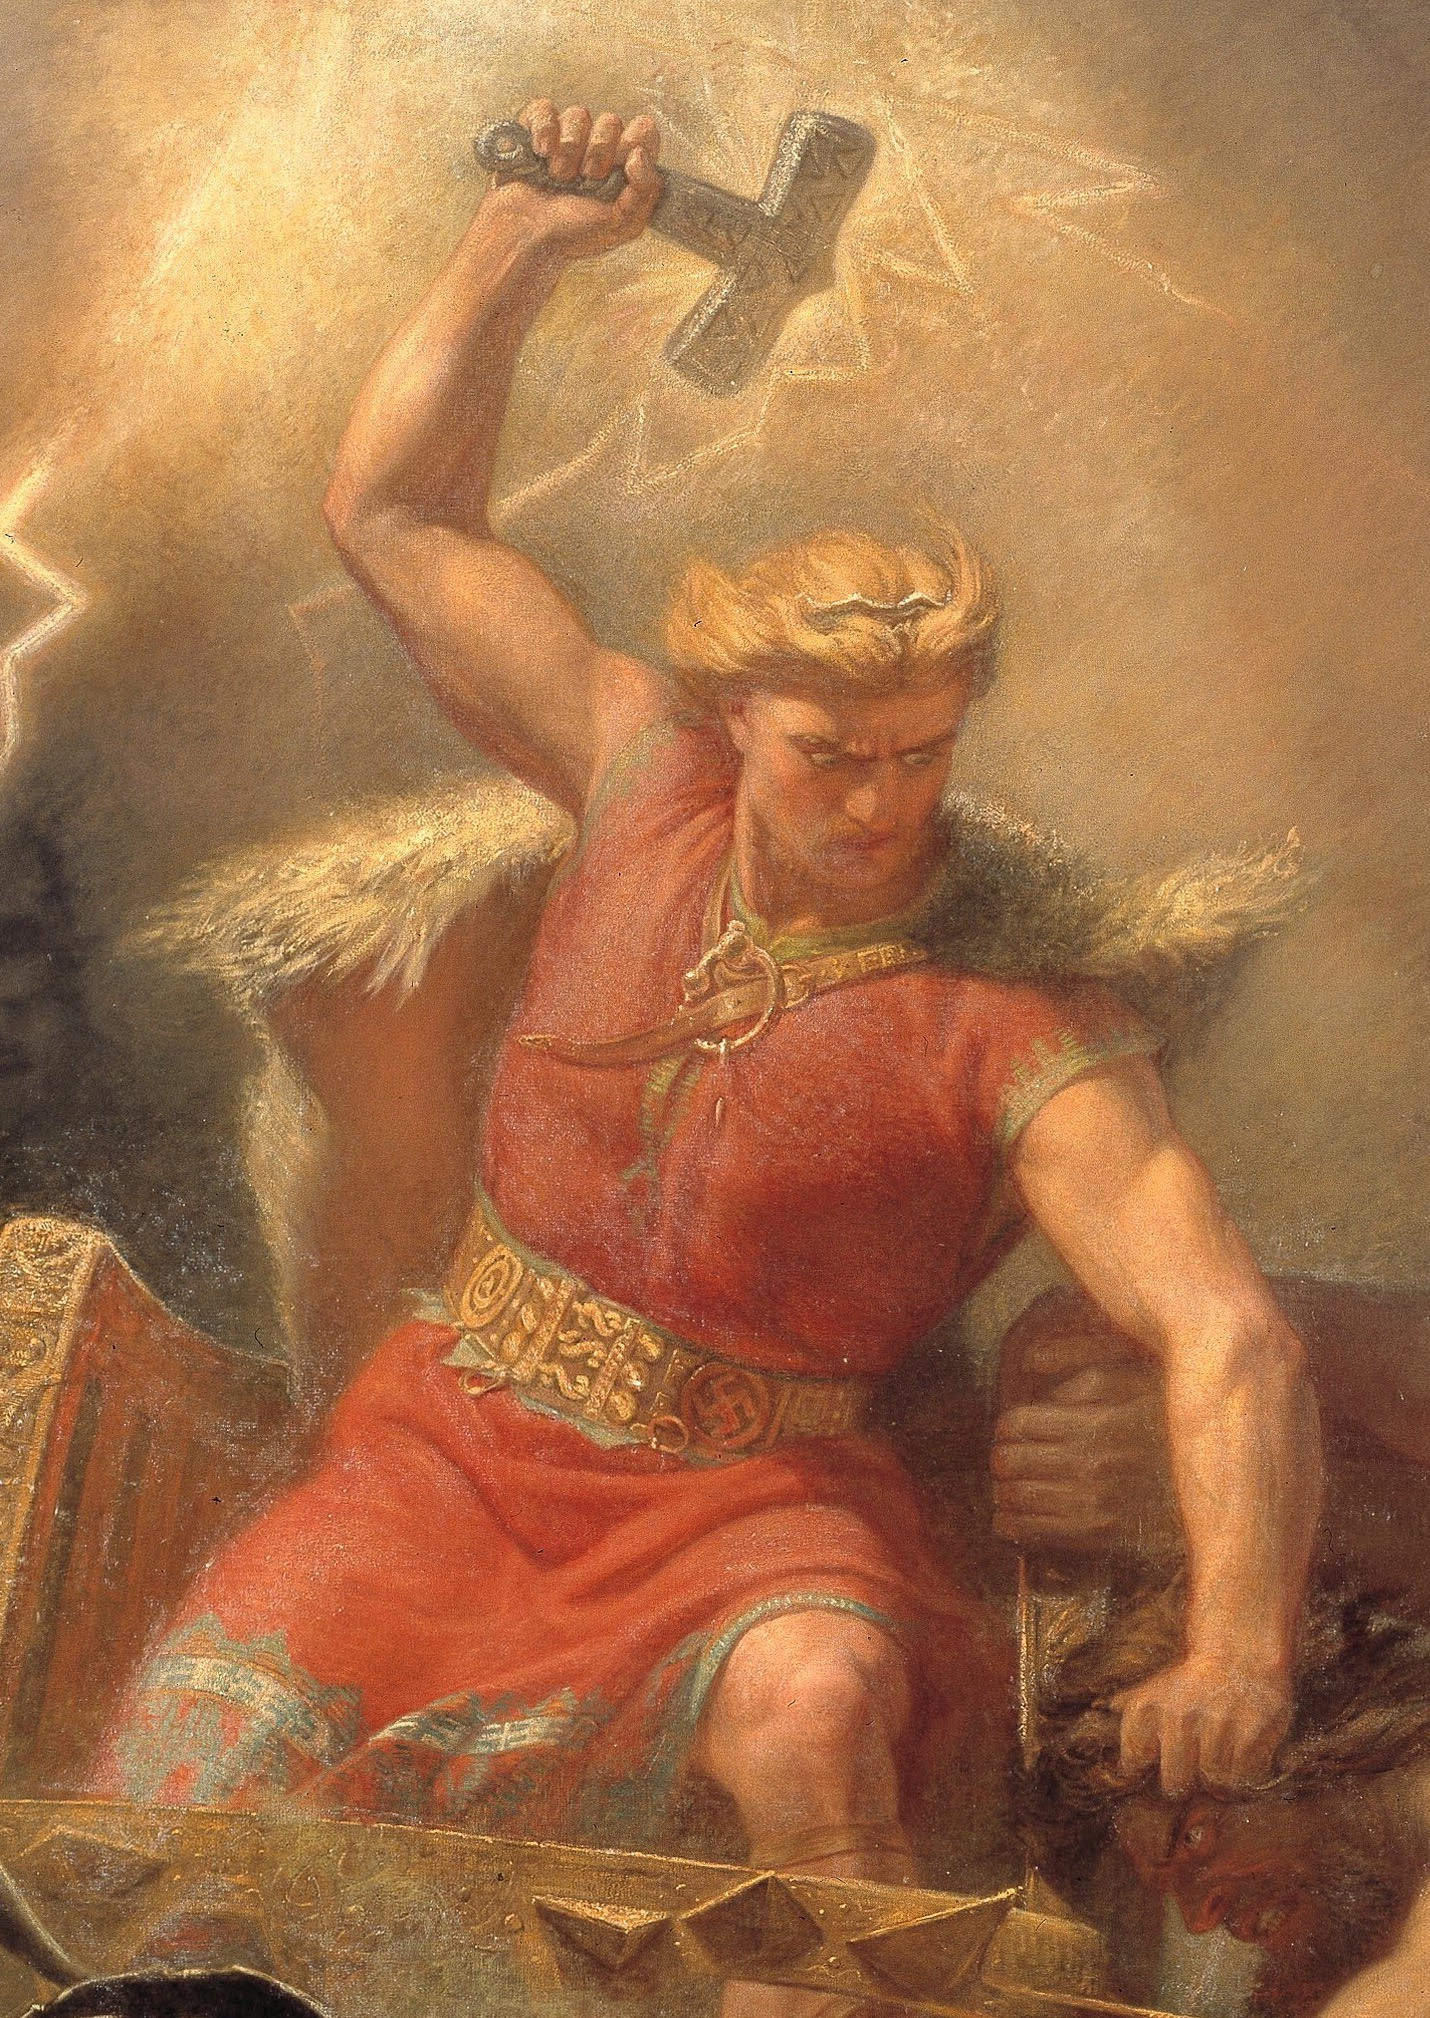 Thor: Ragnarok – Wikipédia, a enciclopédia livre